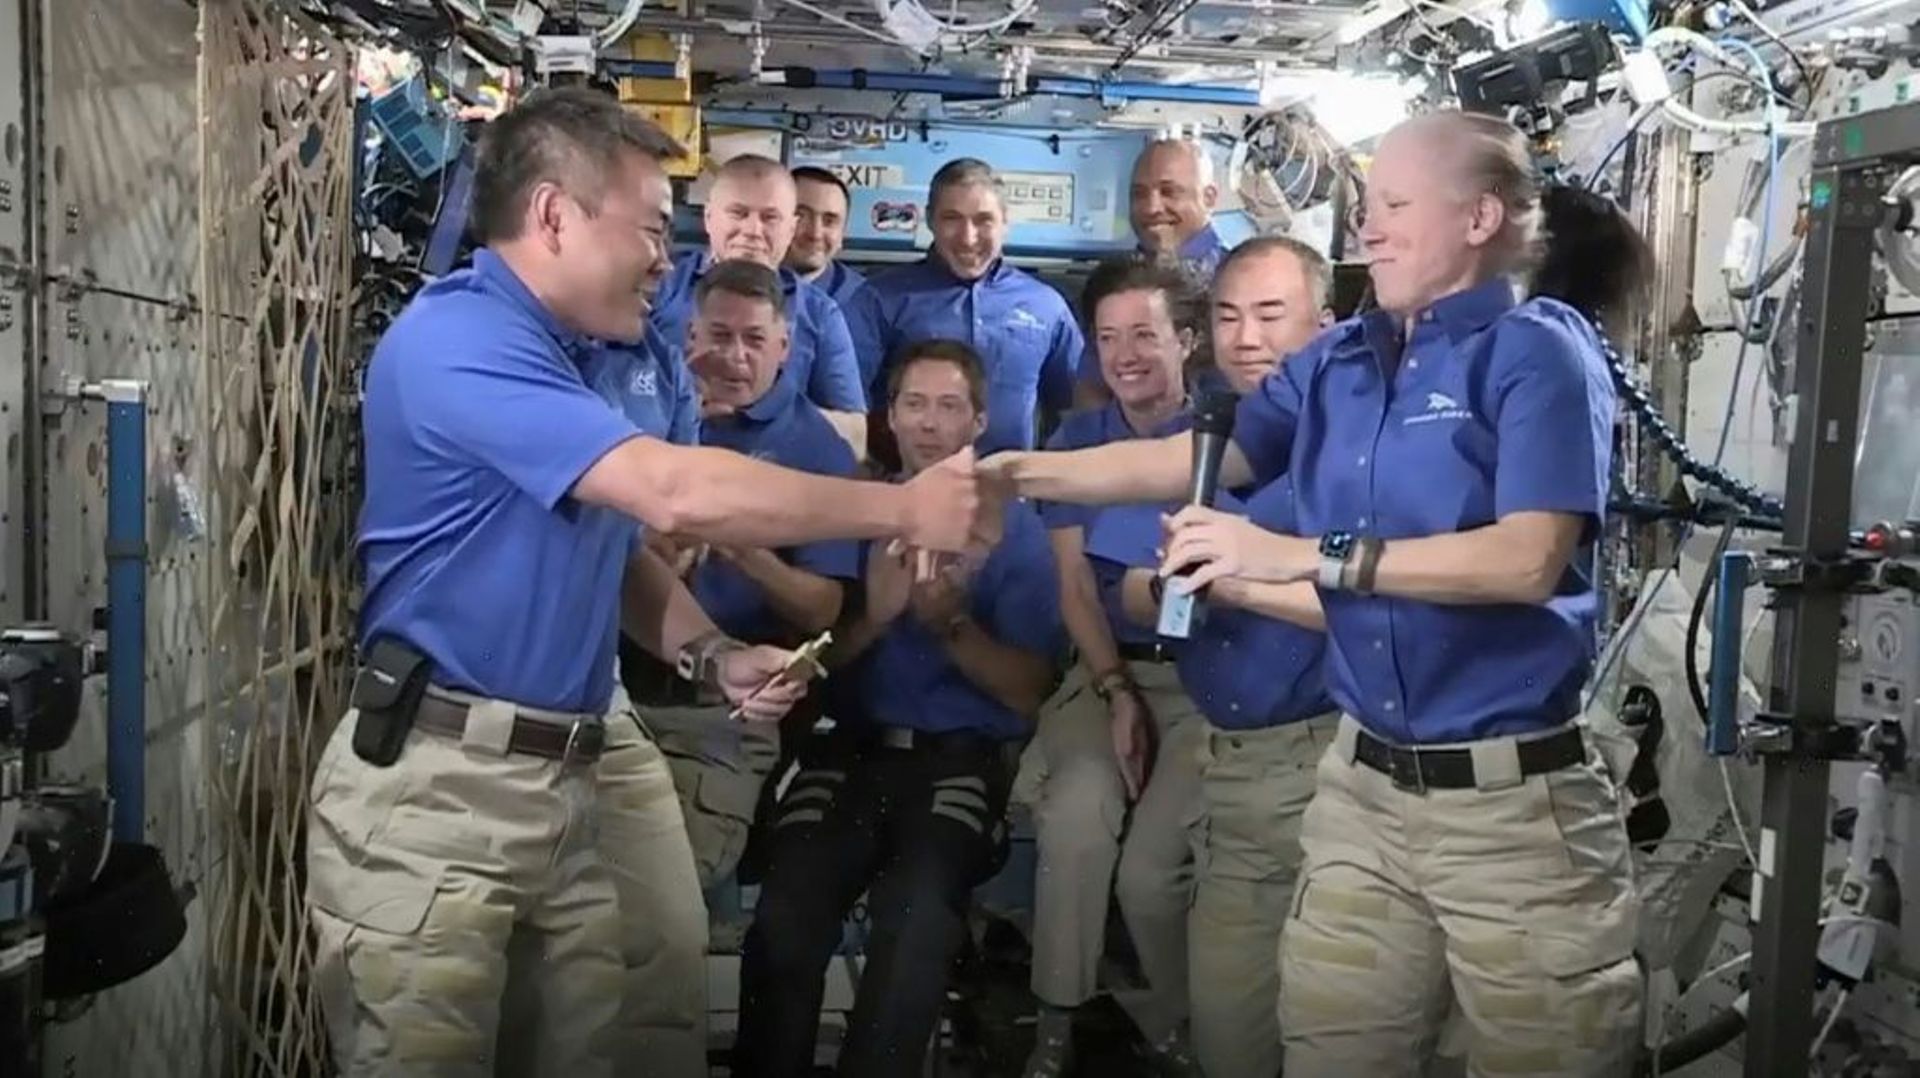 Capture d'écran de la NASA TV, qui montre la transmission du commandement de l'ISS de Shannon Walker à Akihiko Hoshide, devant le reste de l'équipe, le 27 avril 2021 